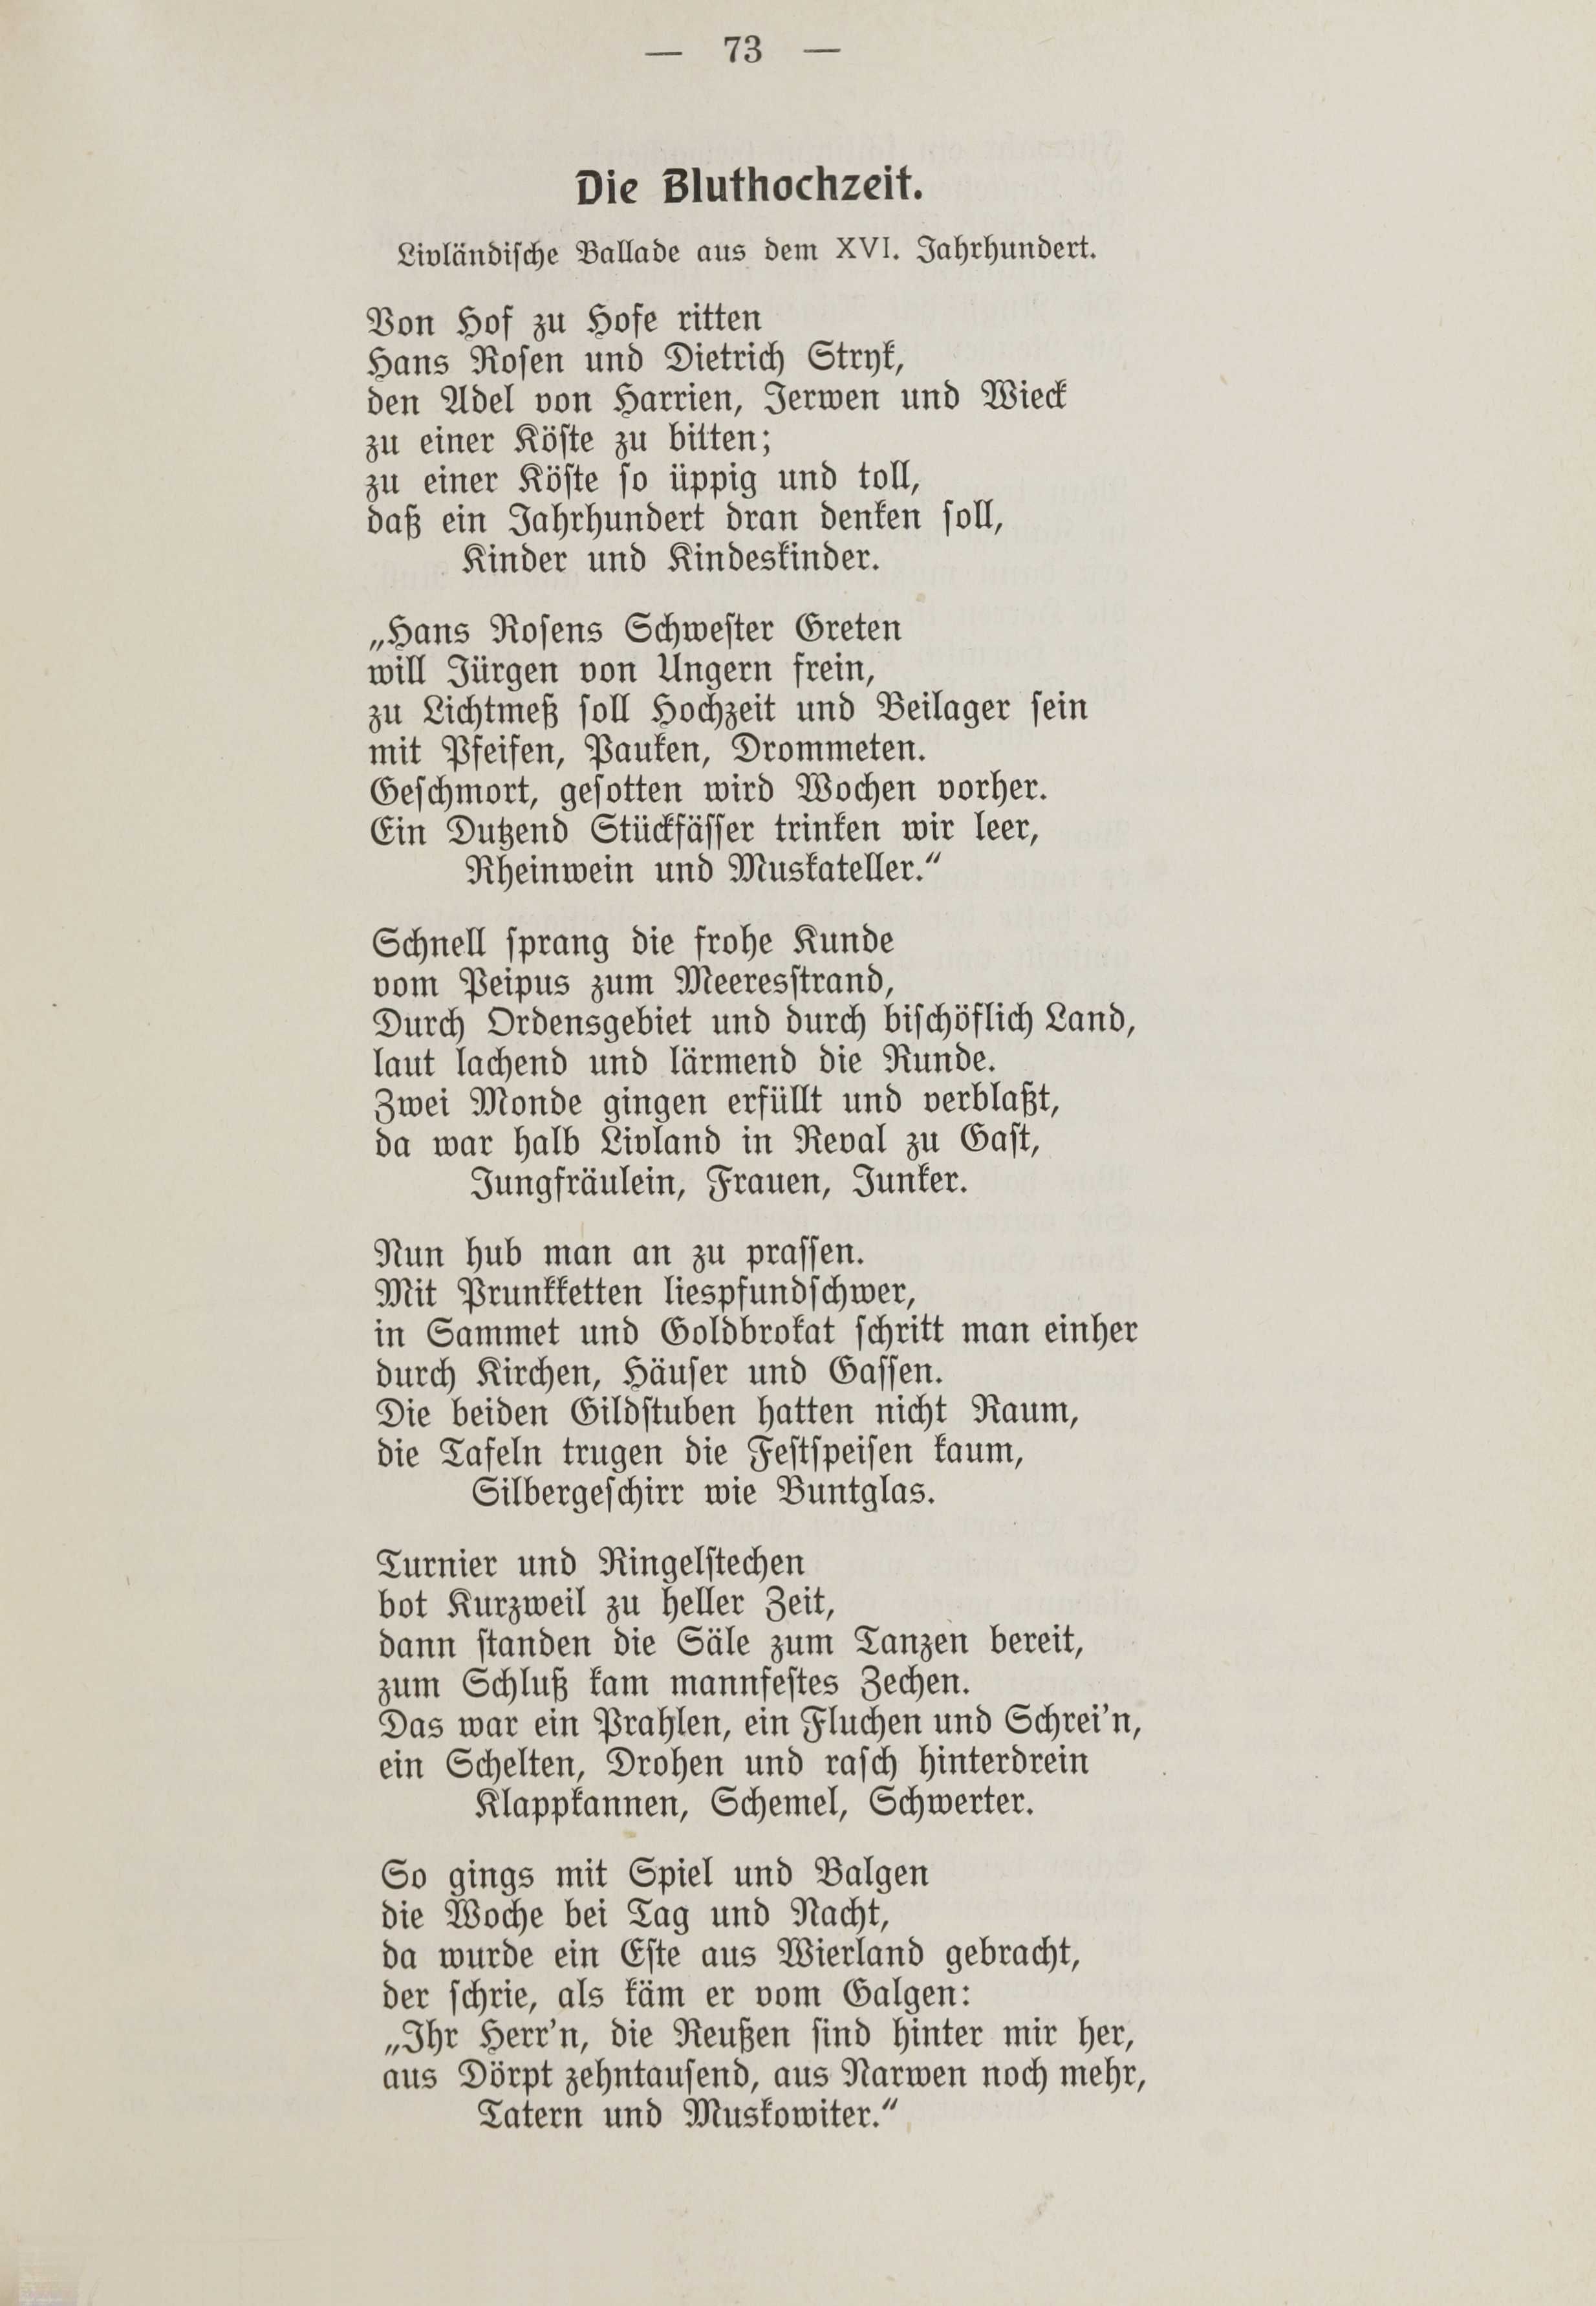 Deutsche Monatsschrift für Russland [1] (1912) | 80. (73) Основной текст